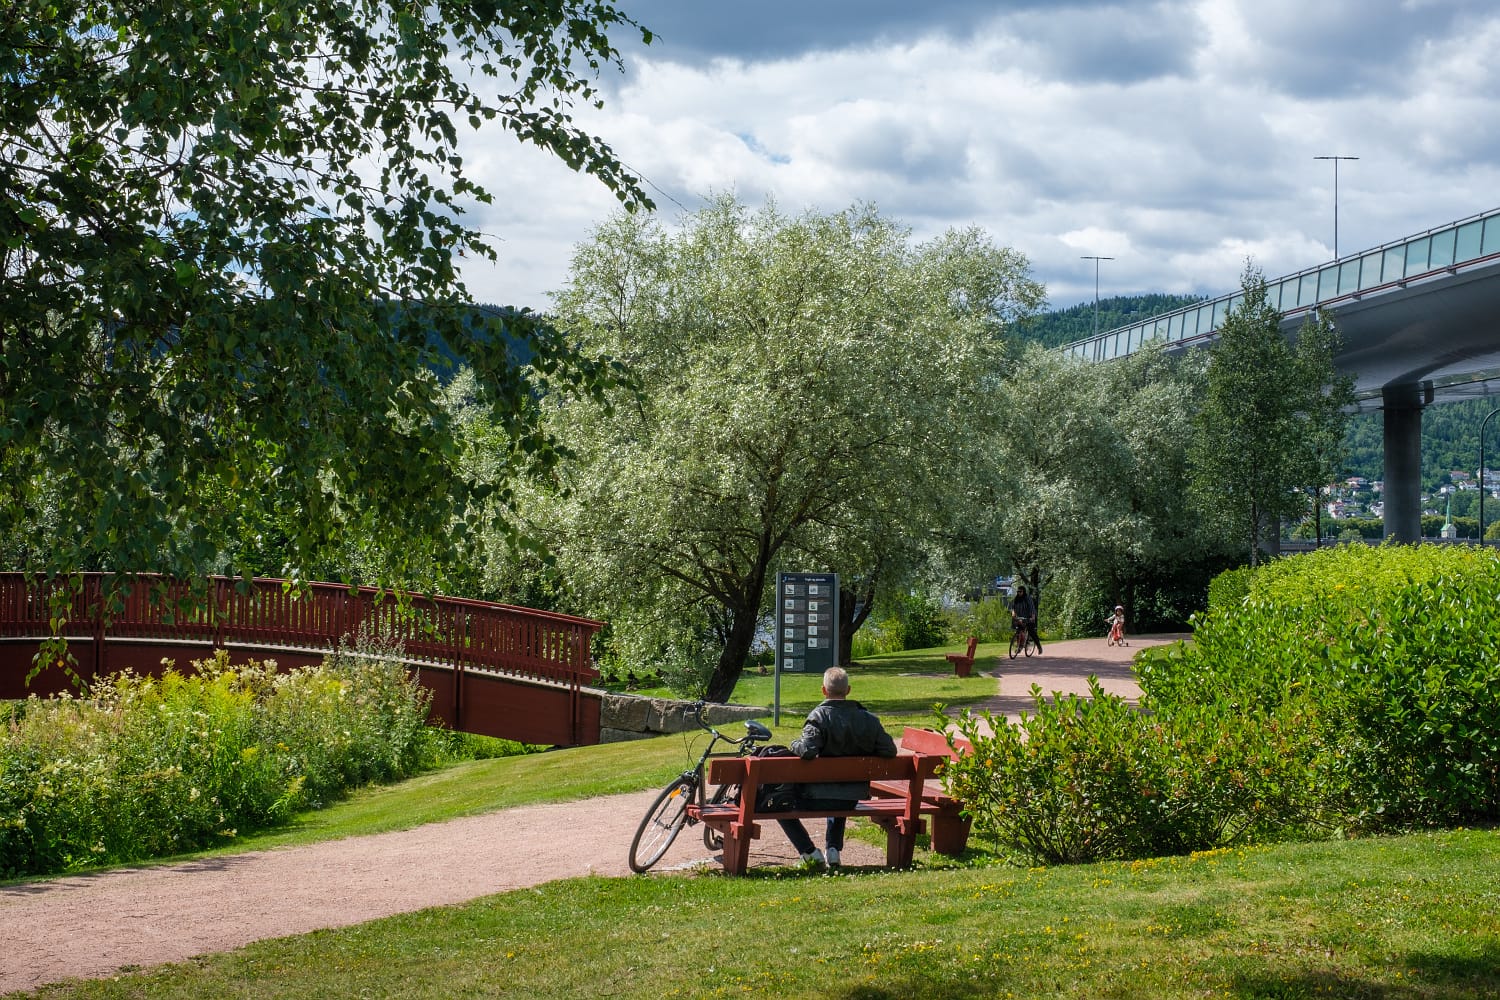 Fjordparken strekker seg fra Holmenbrua og østover helt til Lier. På bildet ses  turvei, sitteplasser og gangbru.